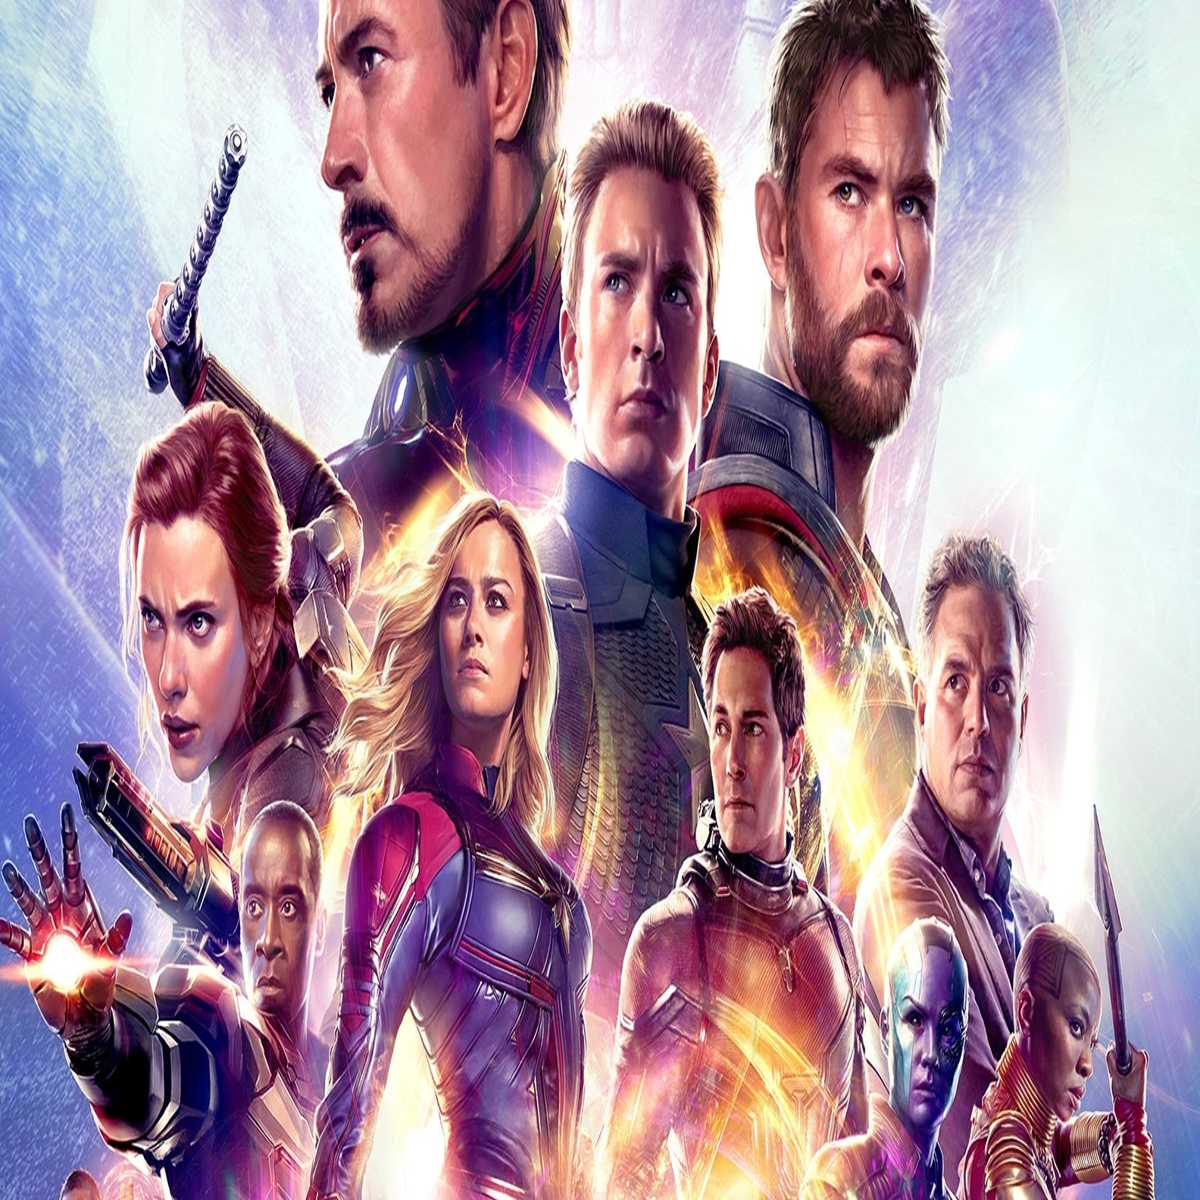 Avengers Endgame já vendeu o dobro dos bilhetes de Aquaman, Infinity War e  Captain Marvel